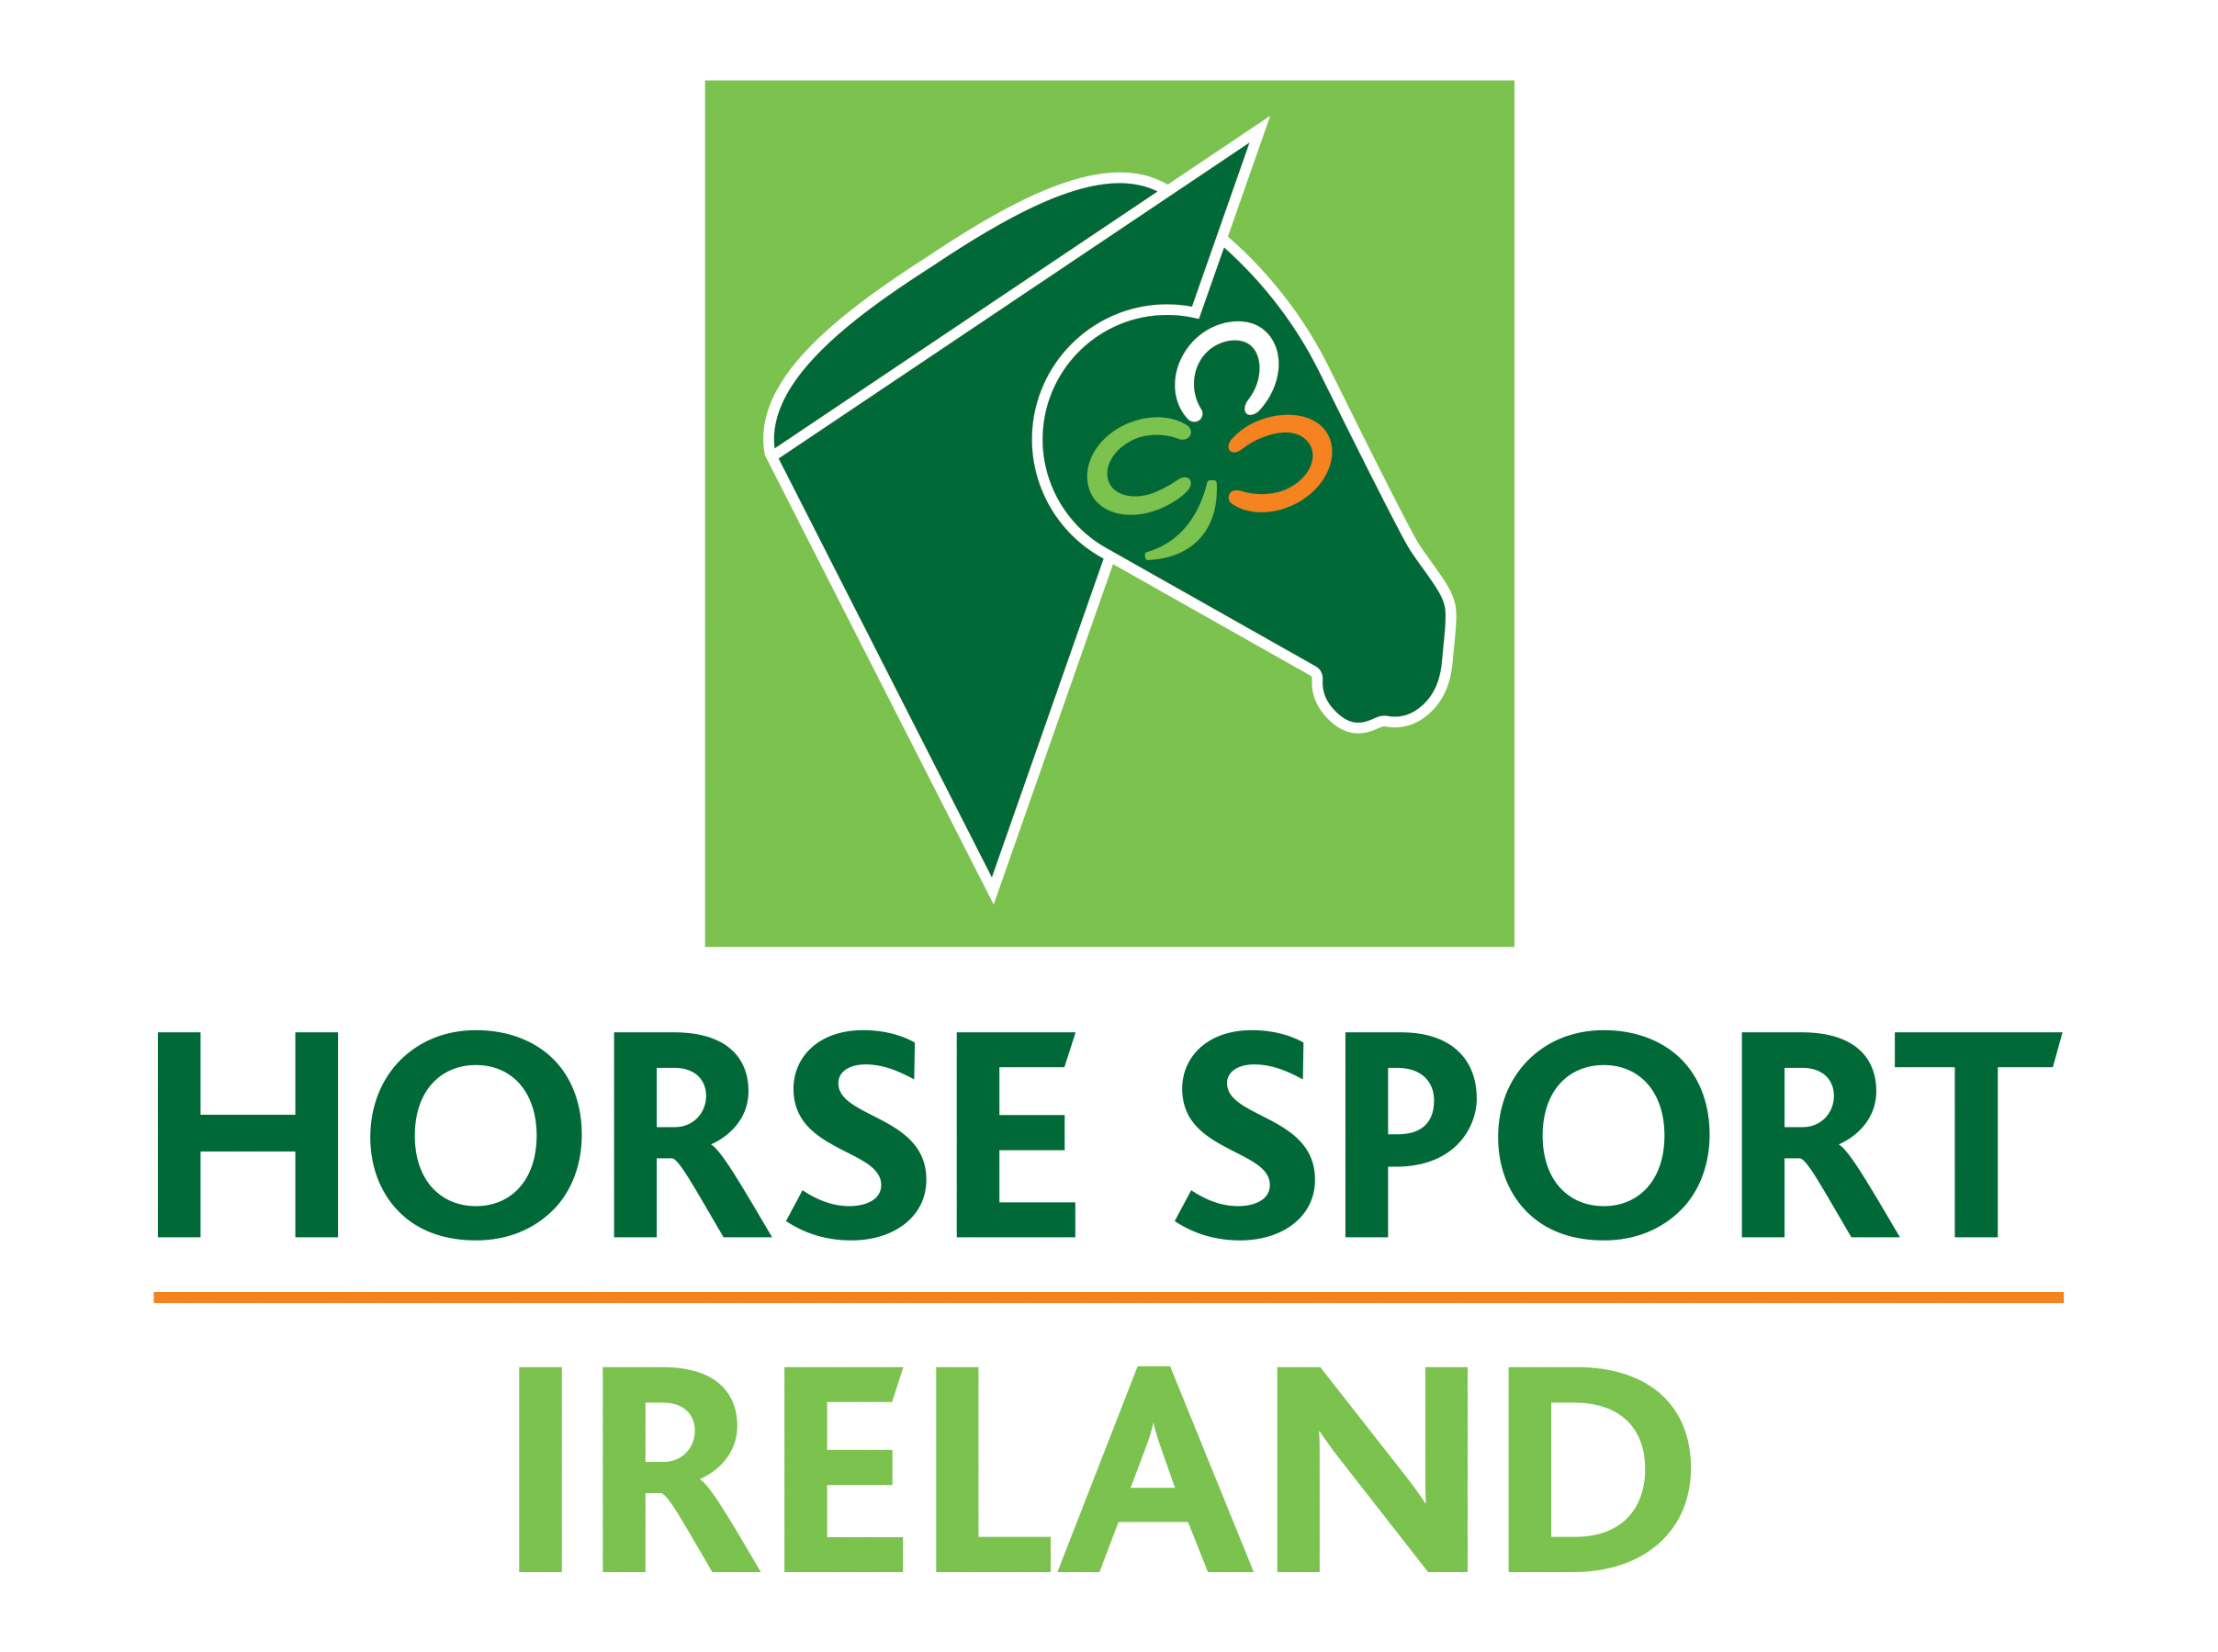 Irish horses & riders third and fourth in Vilamoura Grand Prix